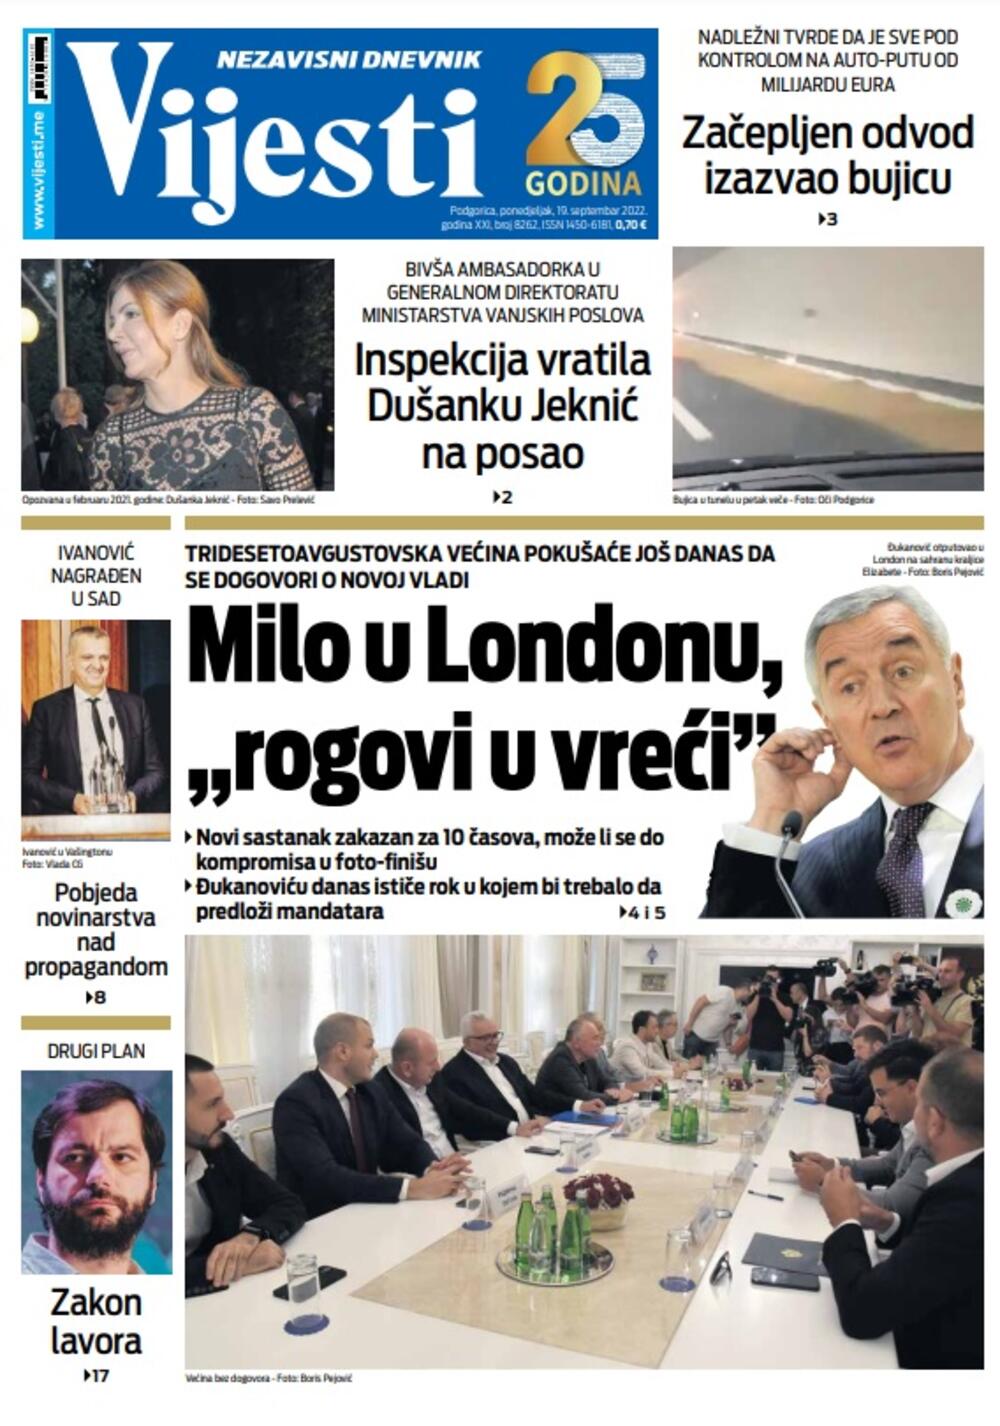 Naslovna strana "Vijesti" za ponedjeljak 19. septembar 2022. godine, Foto: Vijesti